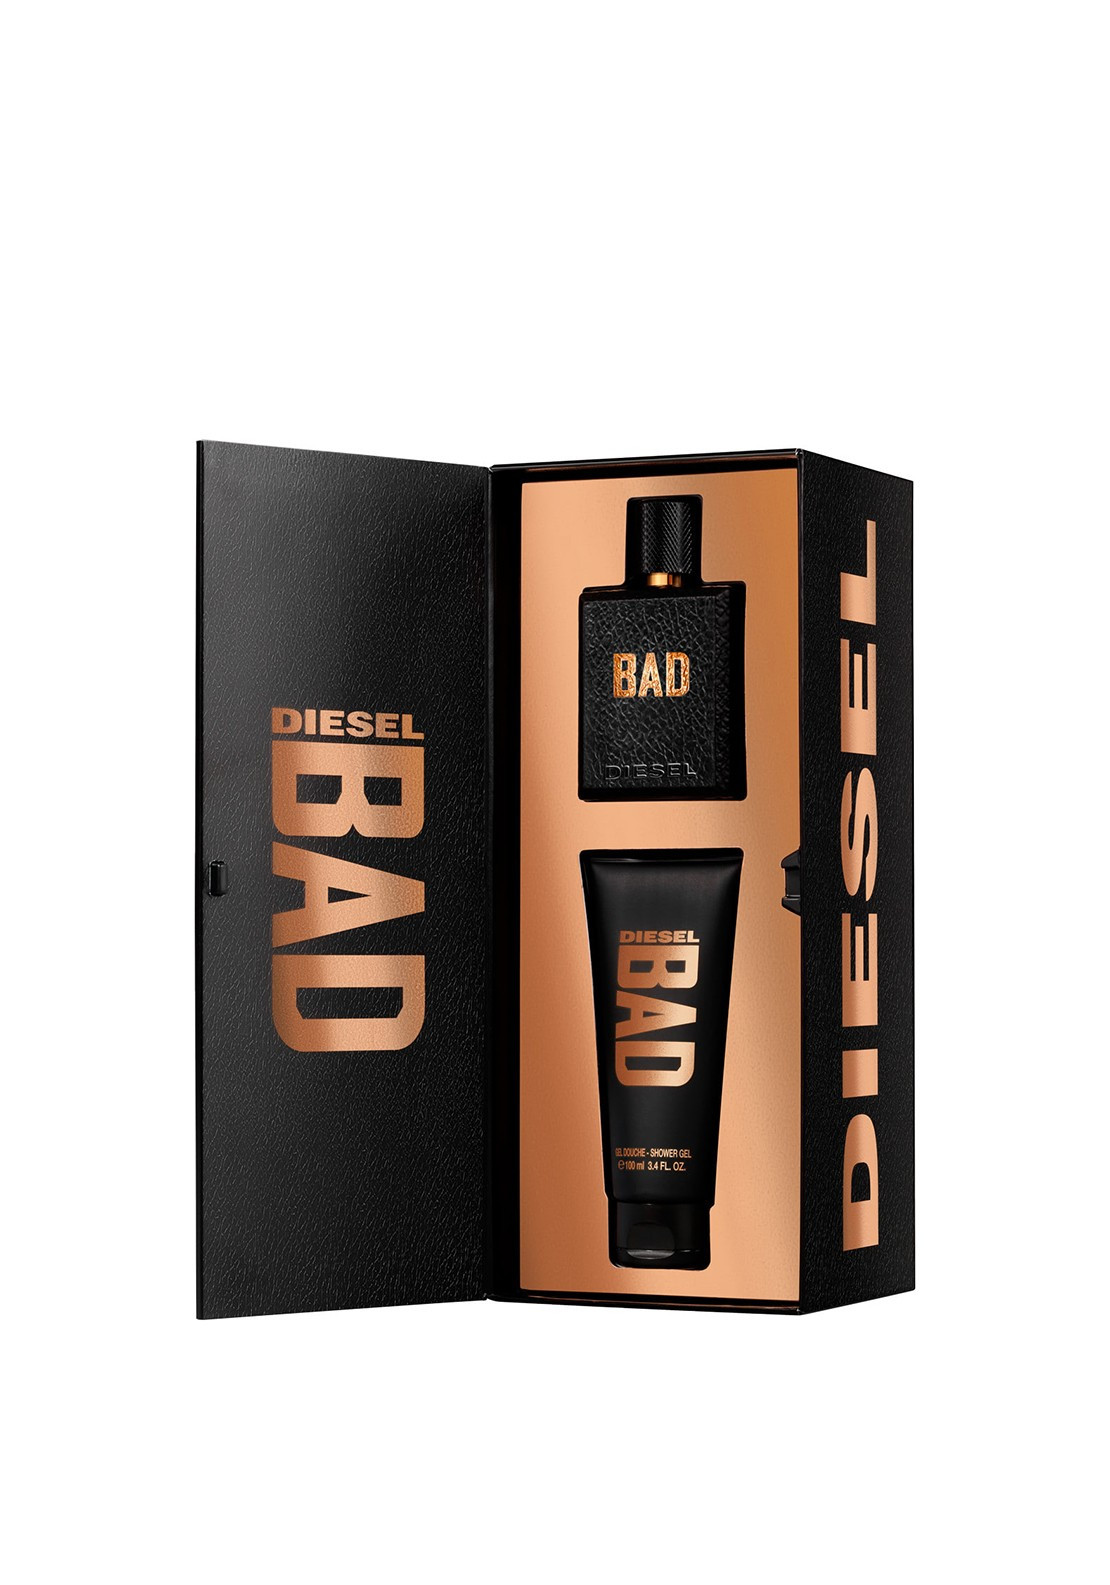 Bad Set
 Bad Diesel Gift Set For Men 50ml